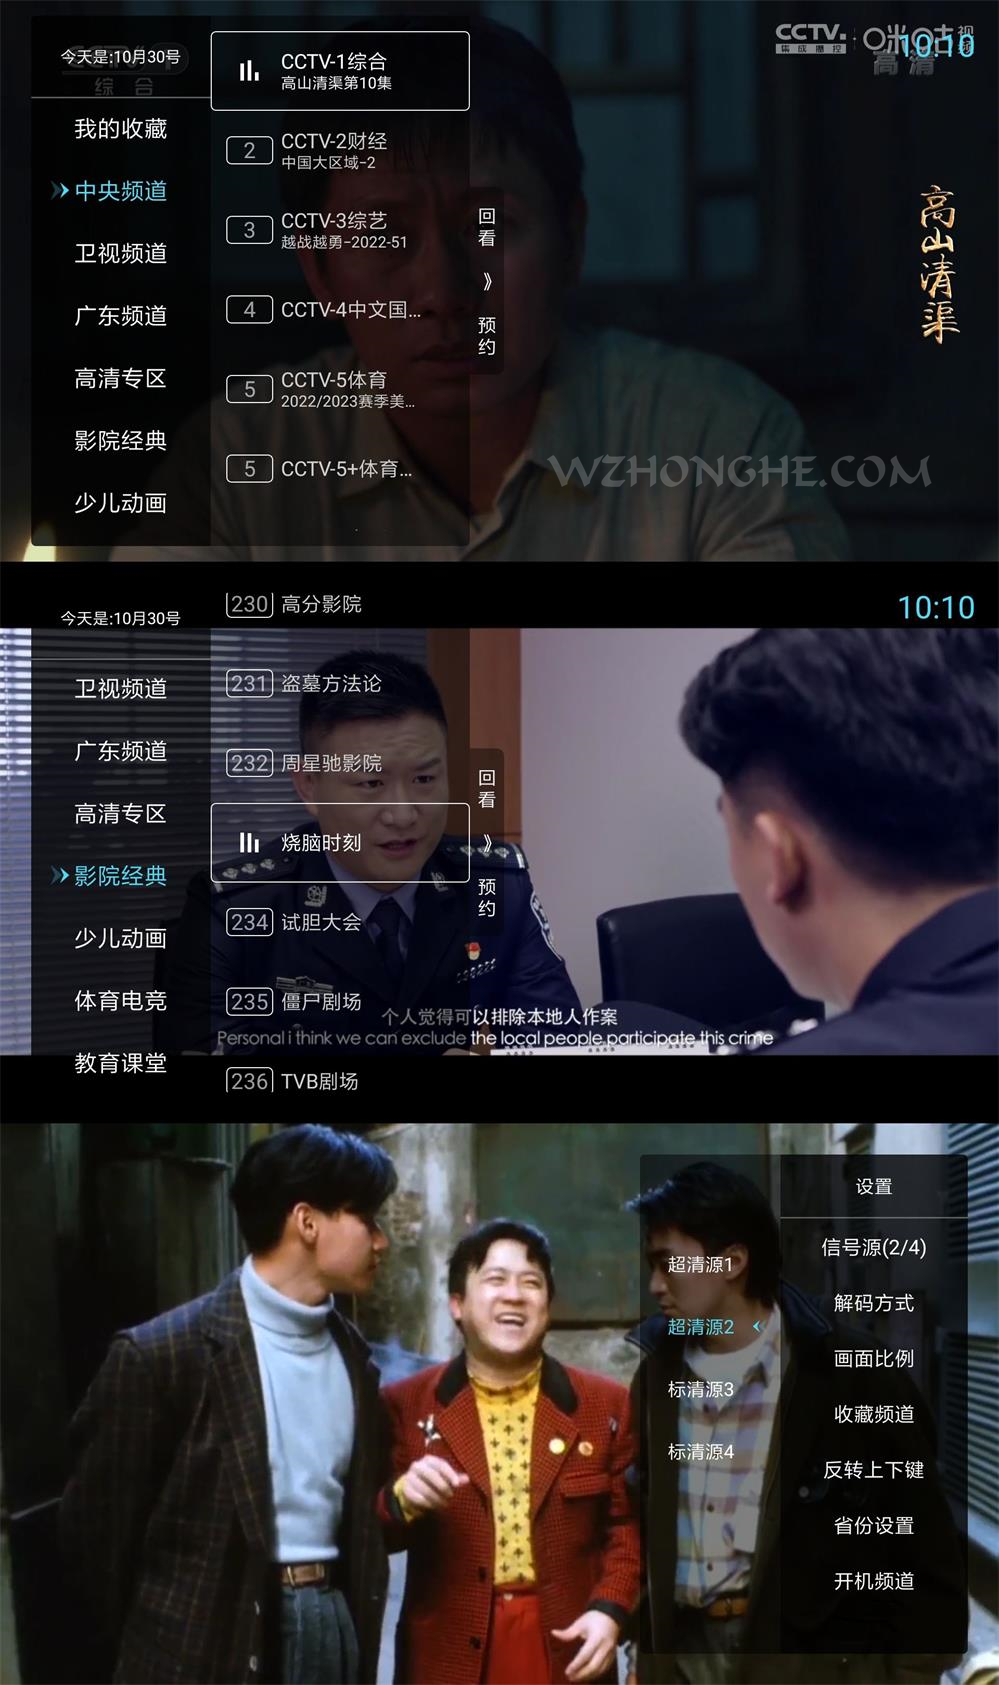 秒看电视TV(电视直播软件) - 无中和wzhonghe.com